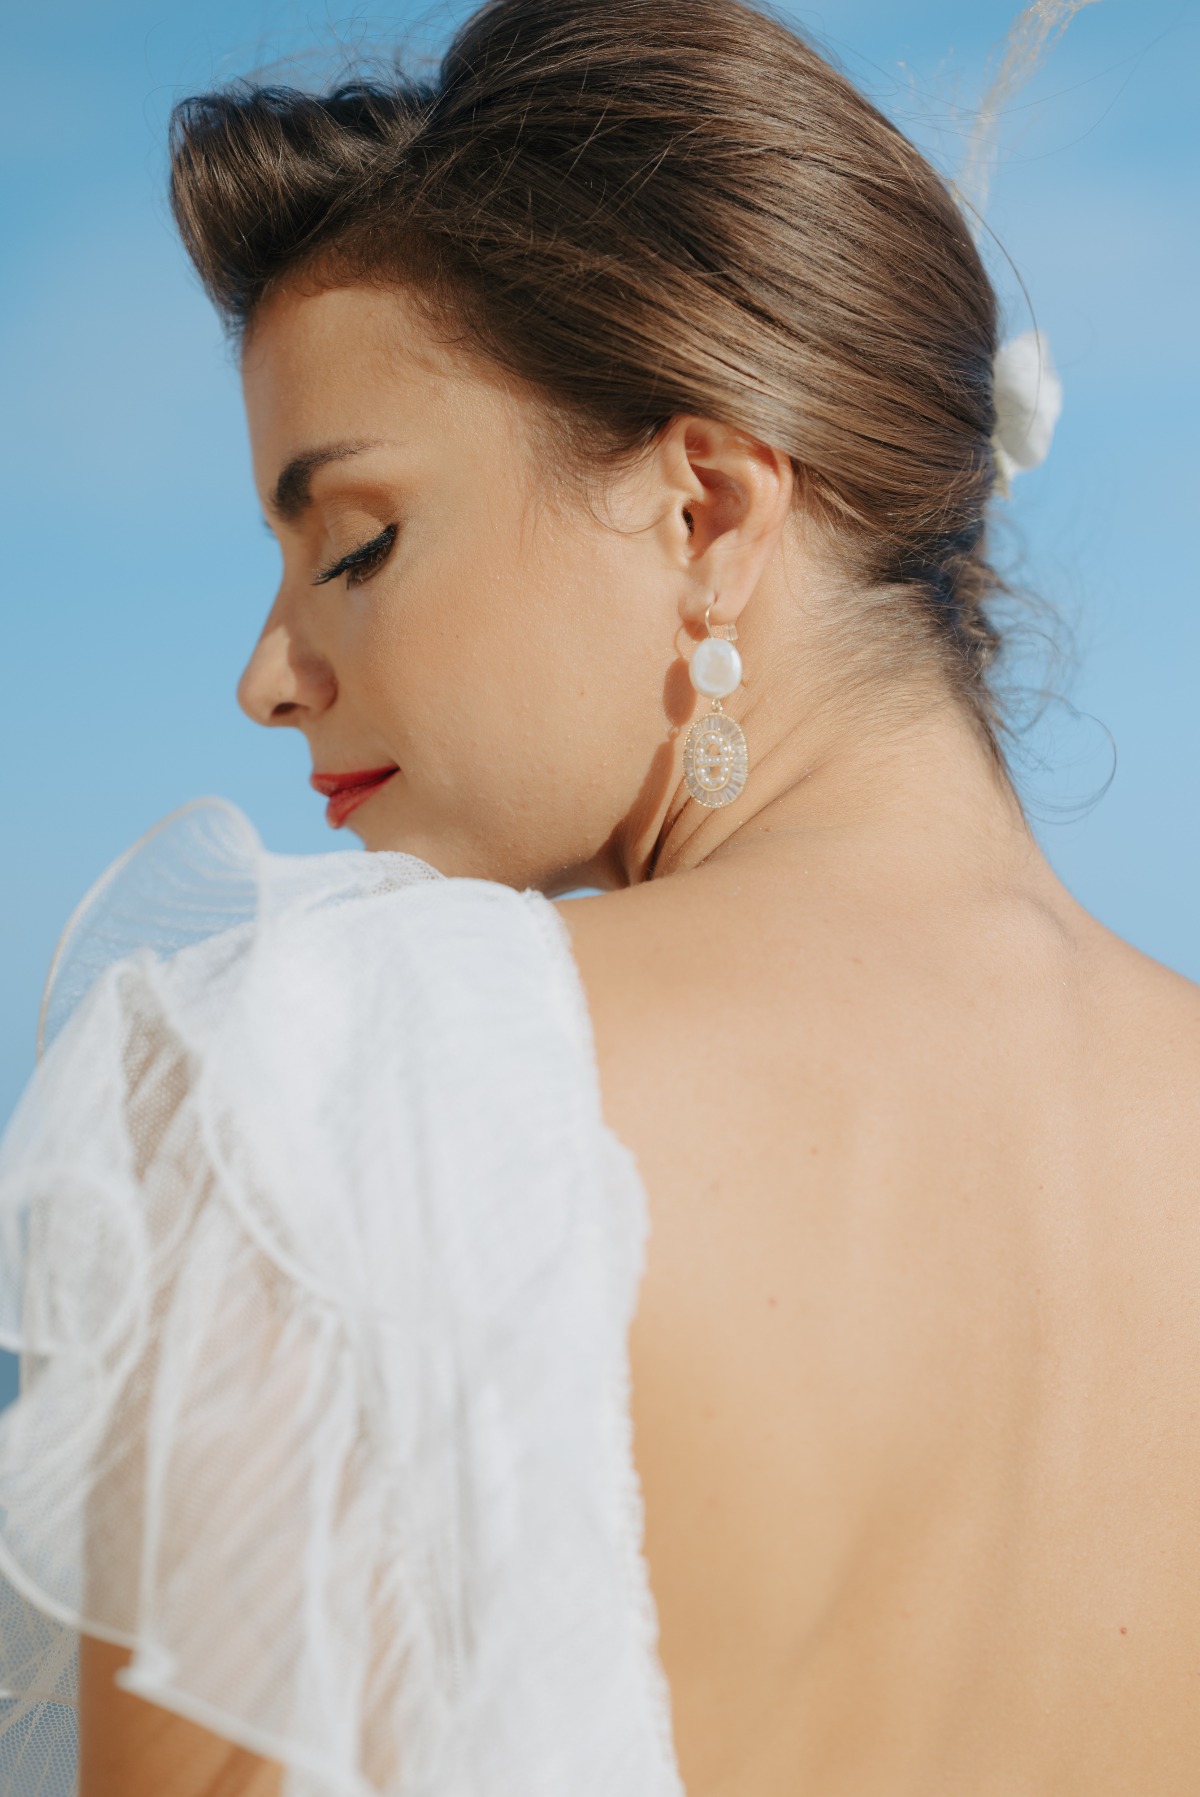 drop earrings for bride